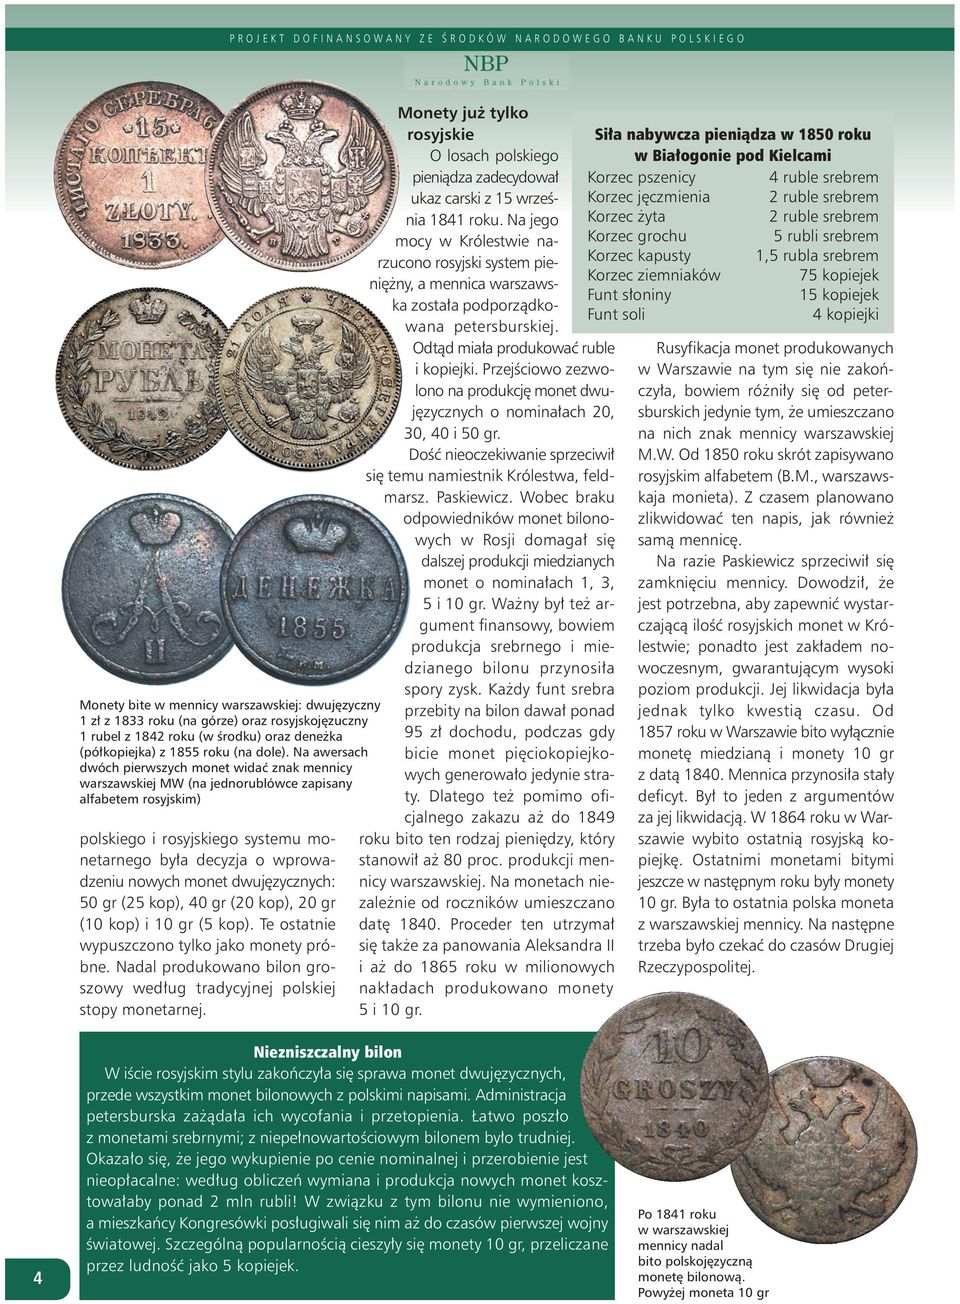 monet dwujęzycznych: 50 gr (25 kop), 40 gr (20 kop), 20 gr (10 kop) i 10 gr (5 kop). Te ostatnie wypuszczono tylko jako monety próbne.